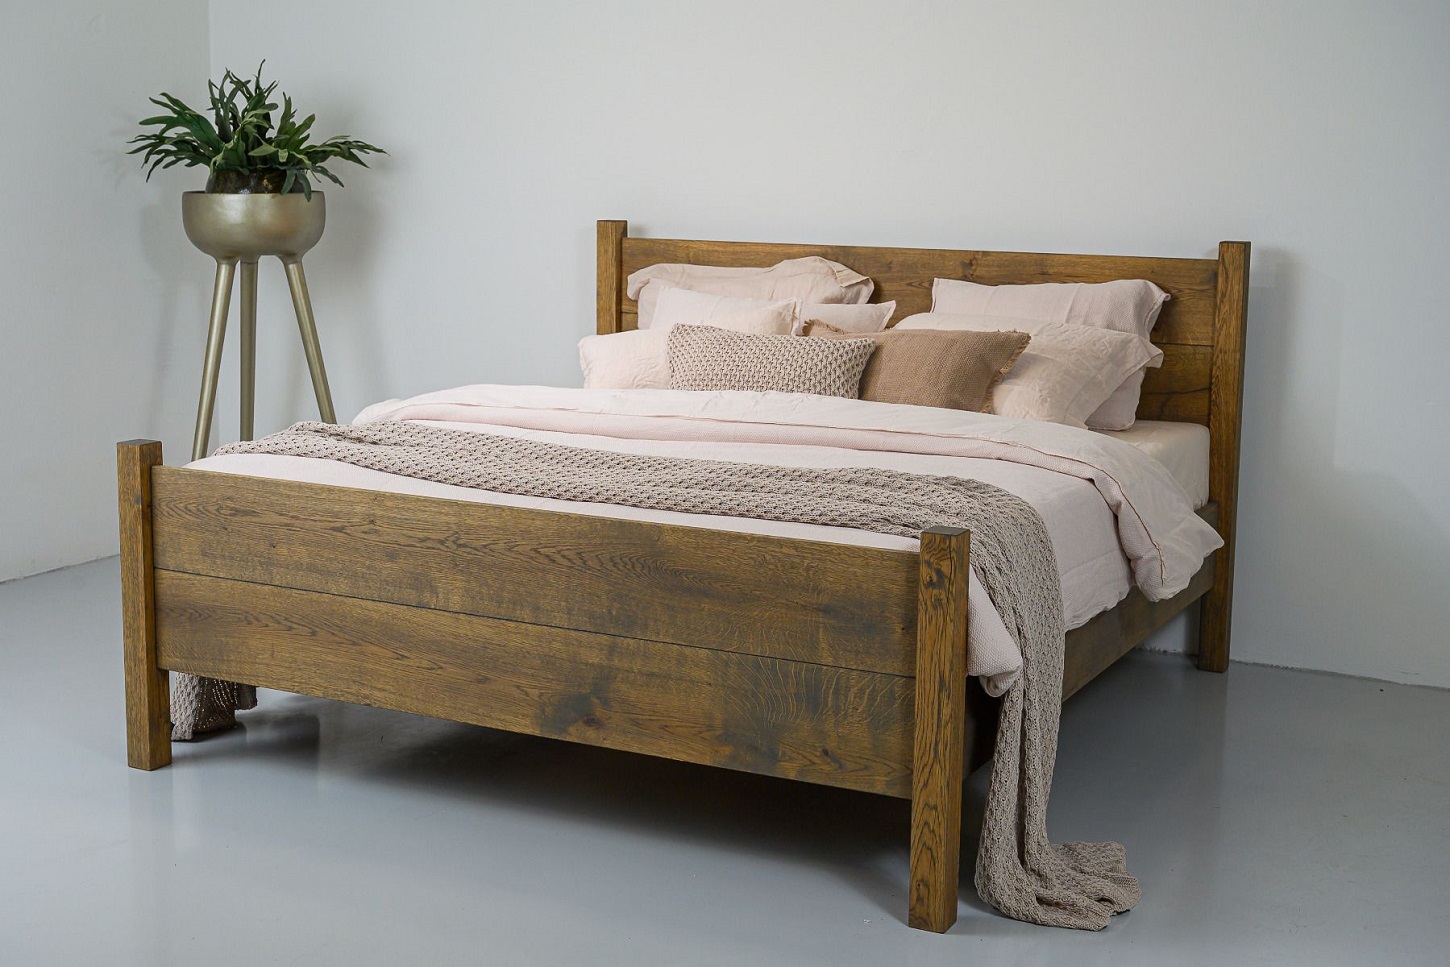 Landelijk houten bed